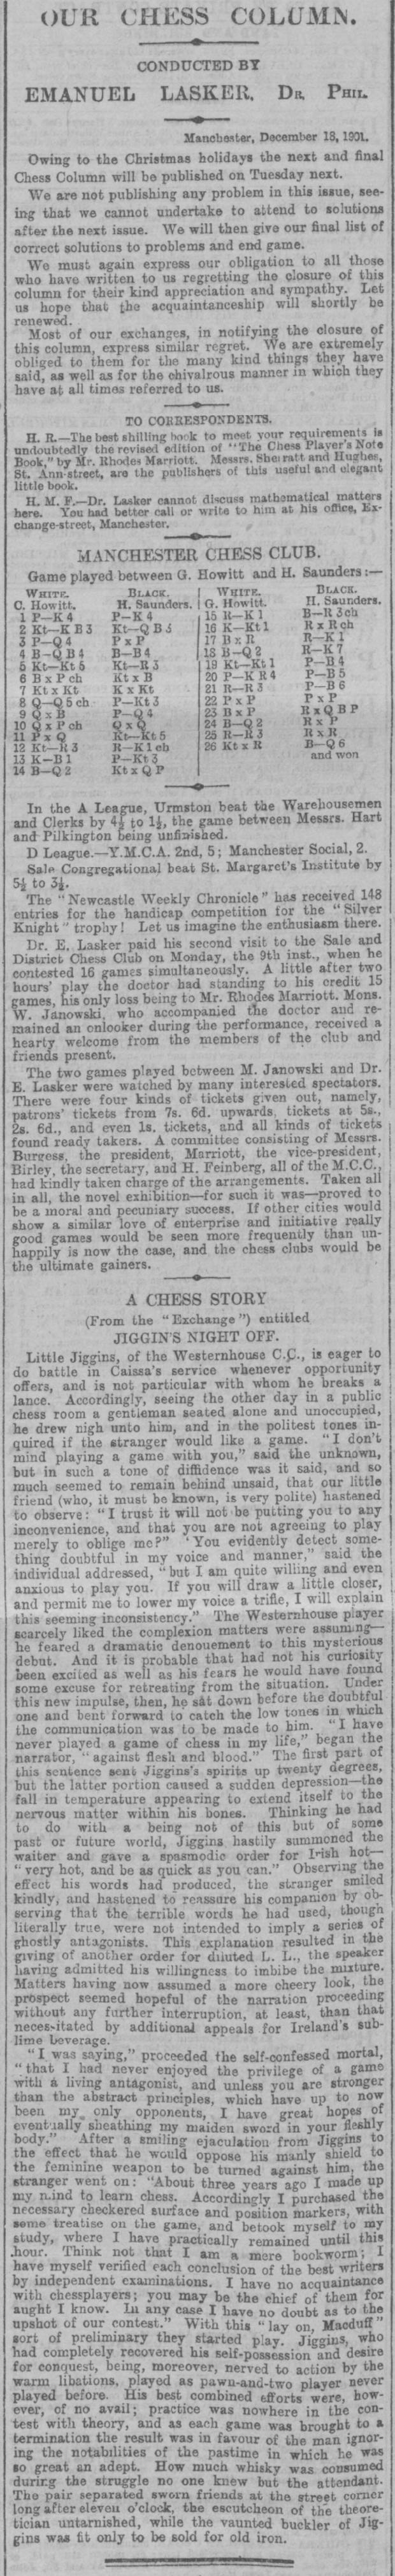 1901.12.18-01 Manchester Evening News.jpg